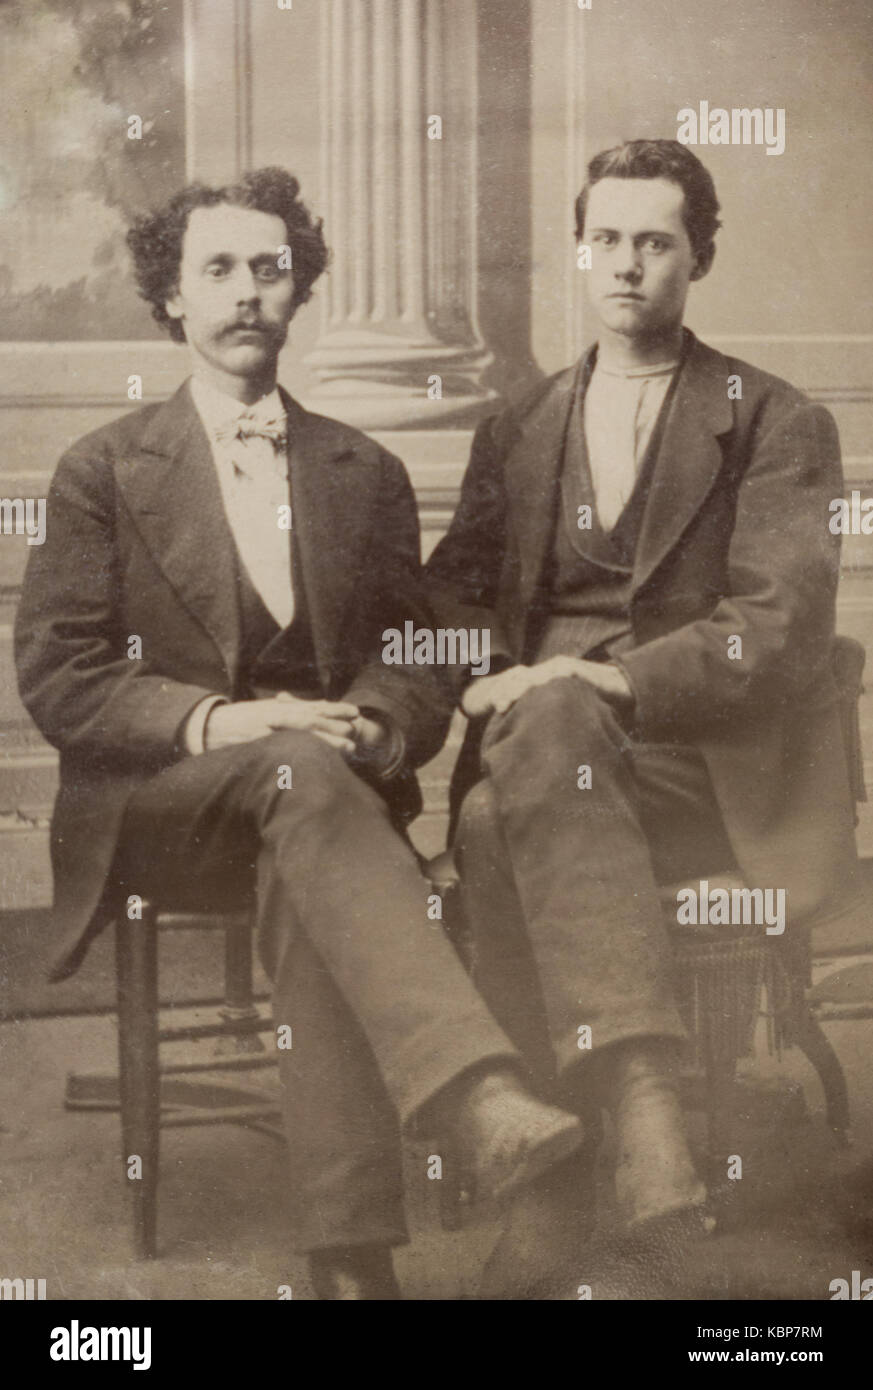 Archive américaine studio monochrome sur plaque ferrotype portrait de deux jeunes hommes assis sur des chaises, un avec une moustache, prises à la fin du 19e siècle, New York, USA Banque D'Images